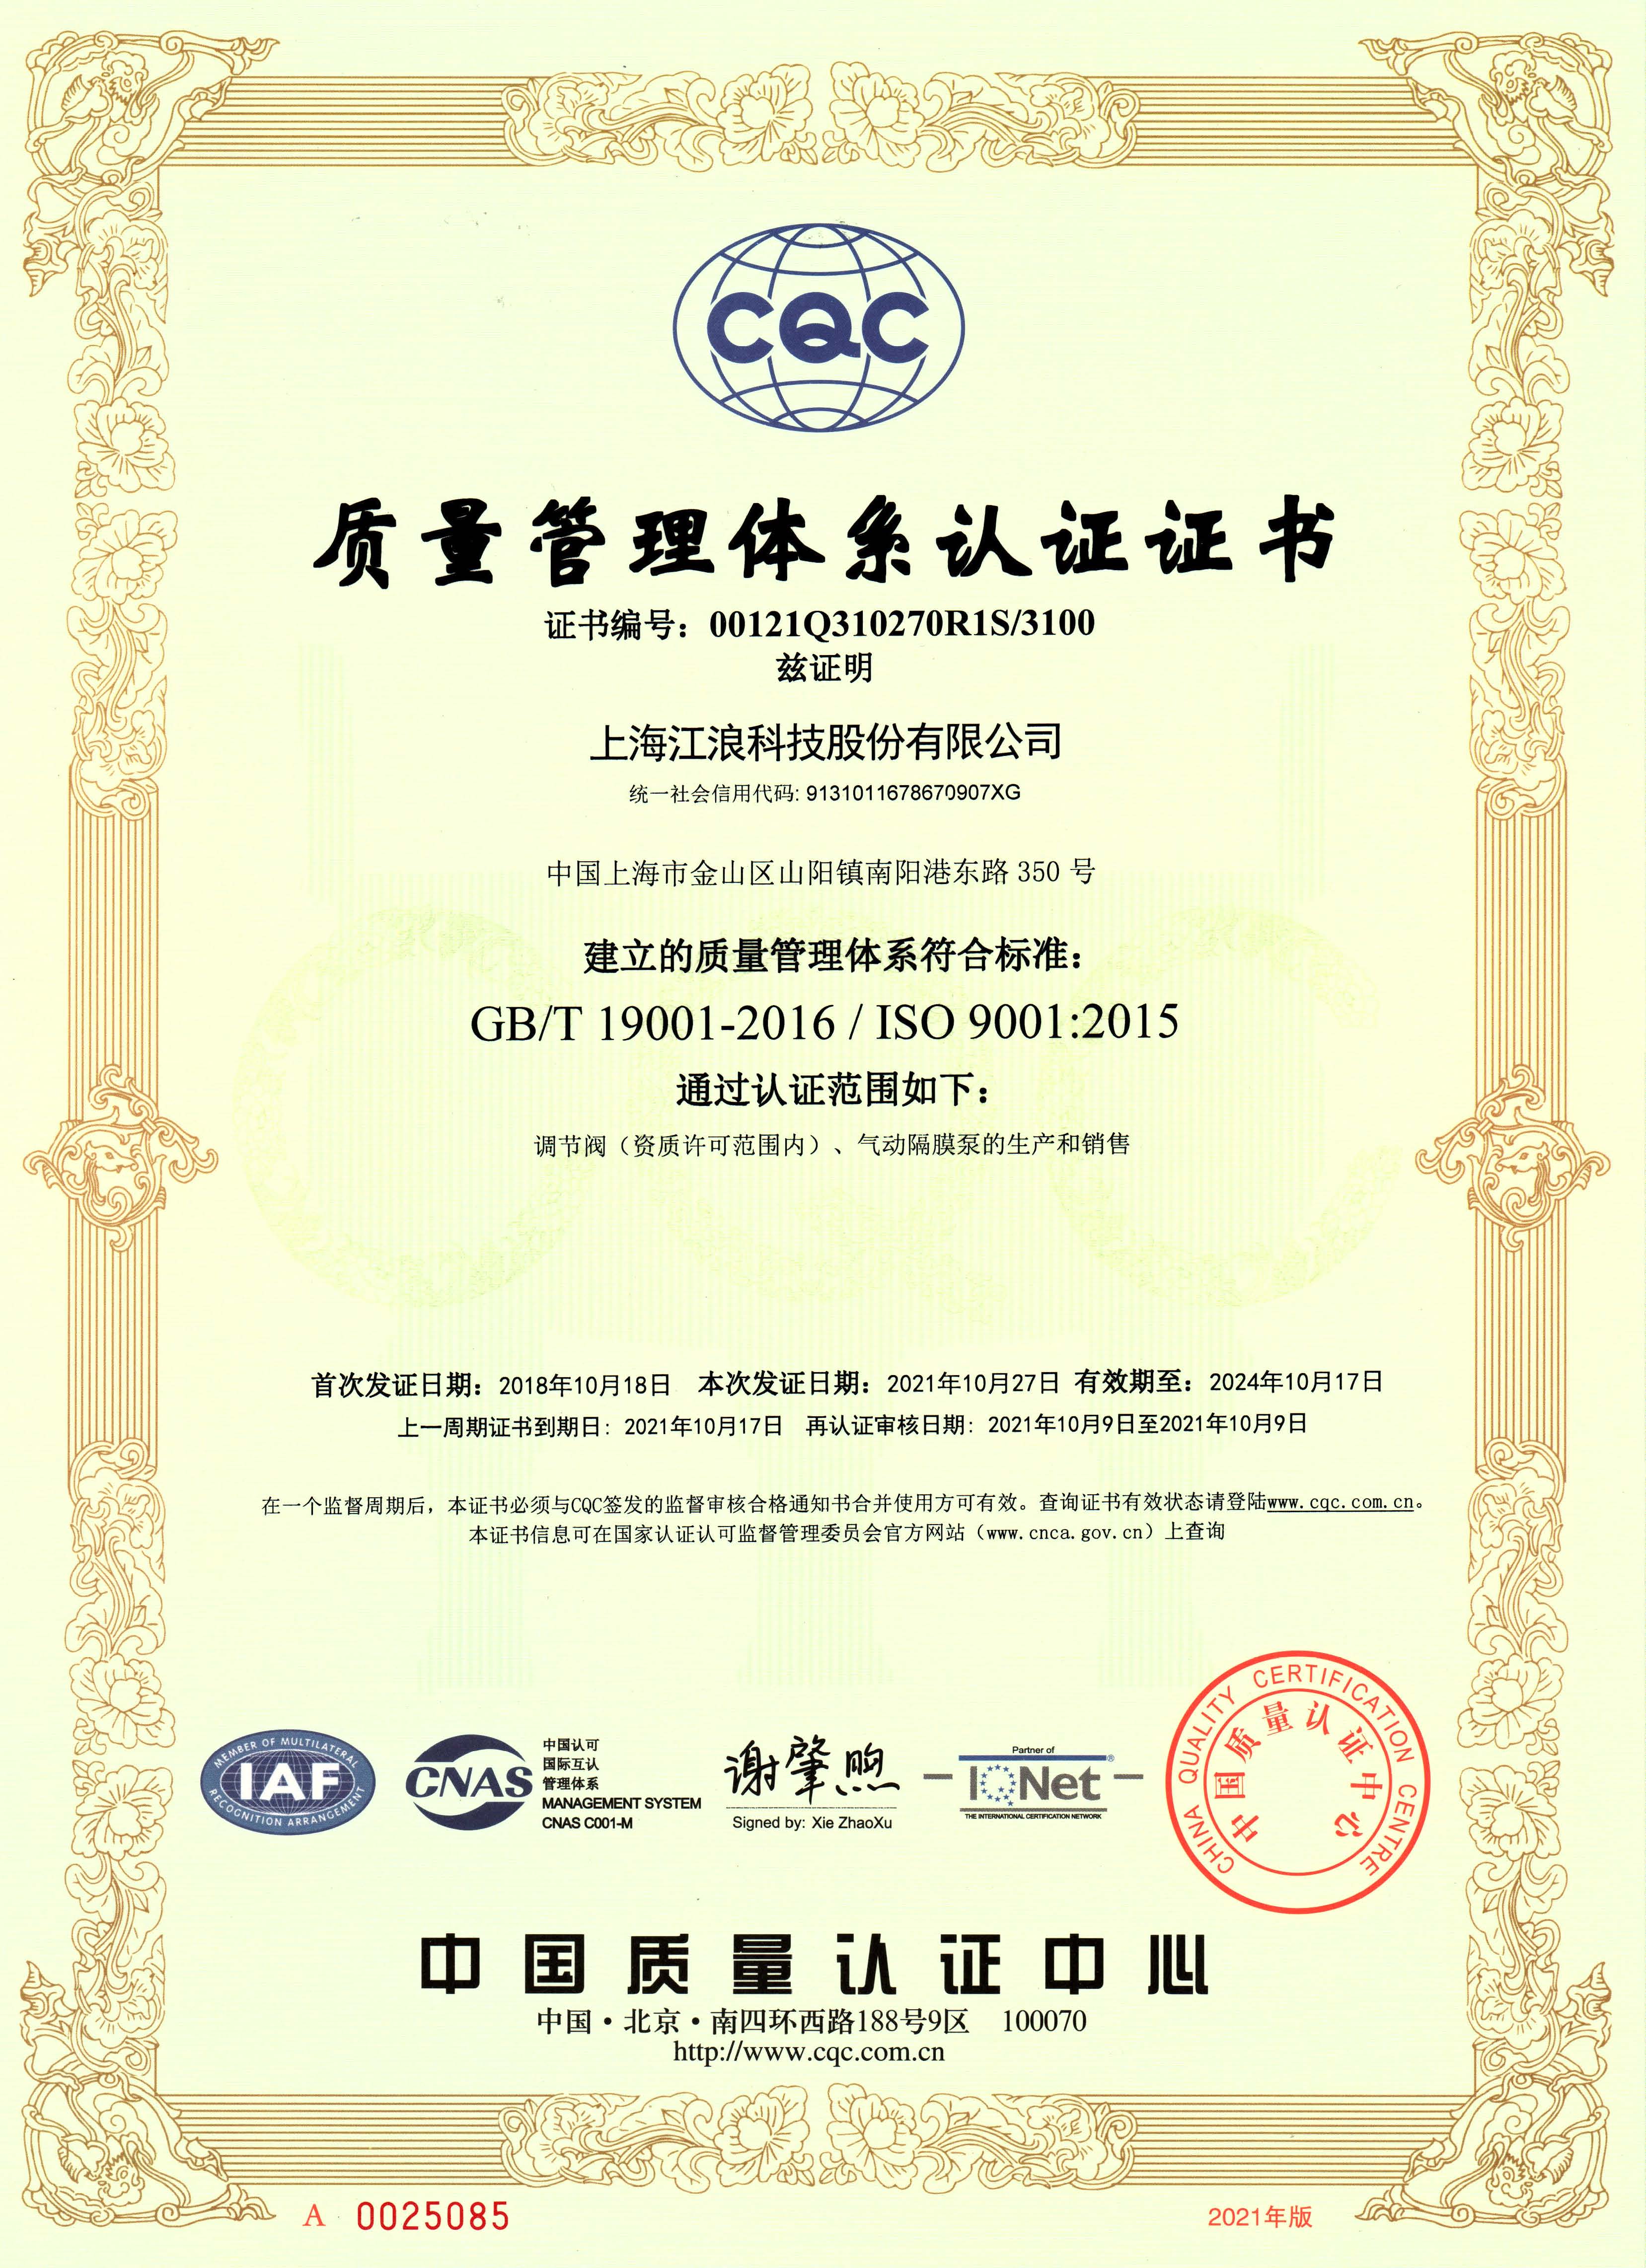 江浪科技 质量管理体系认证